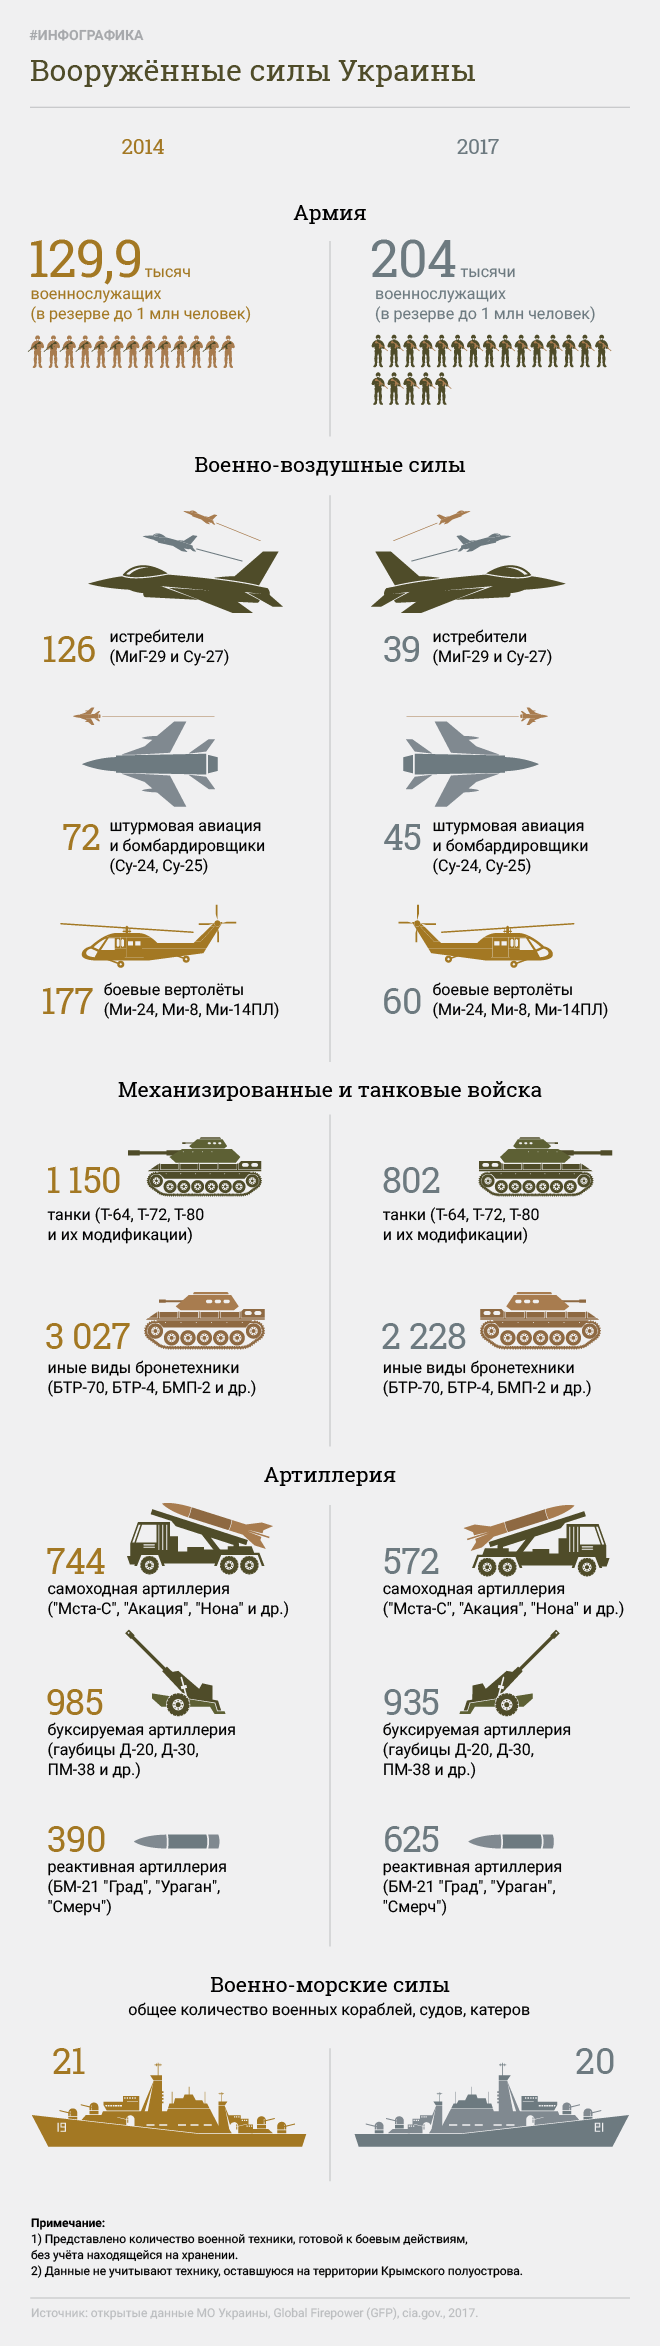 Вооруженные силы Украины. Инфографика